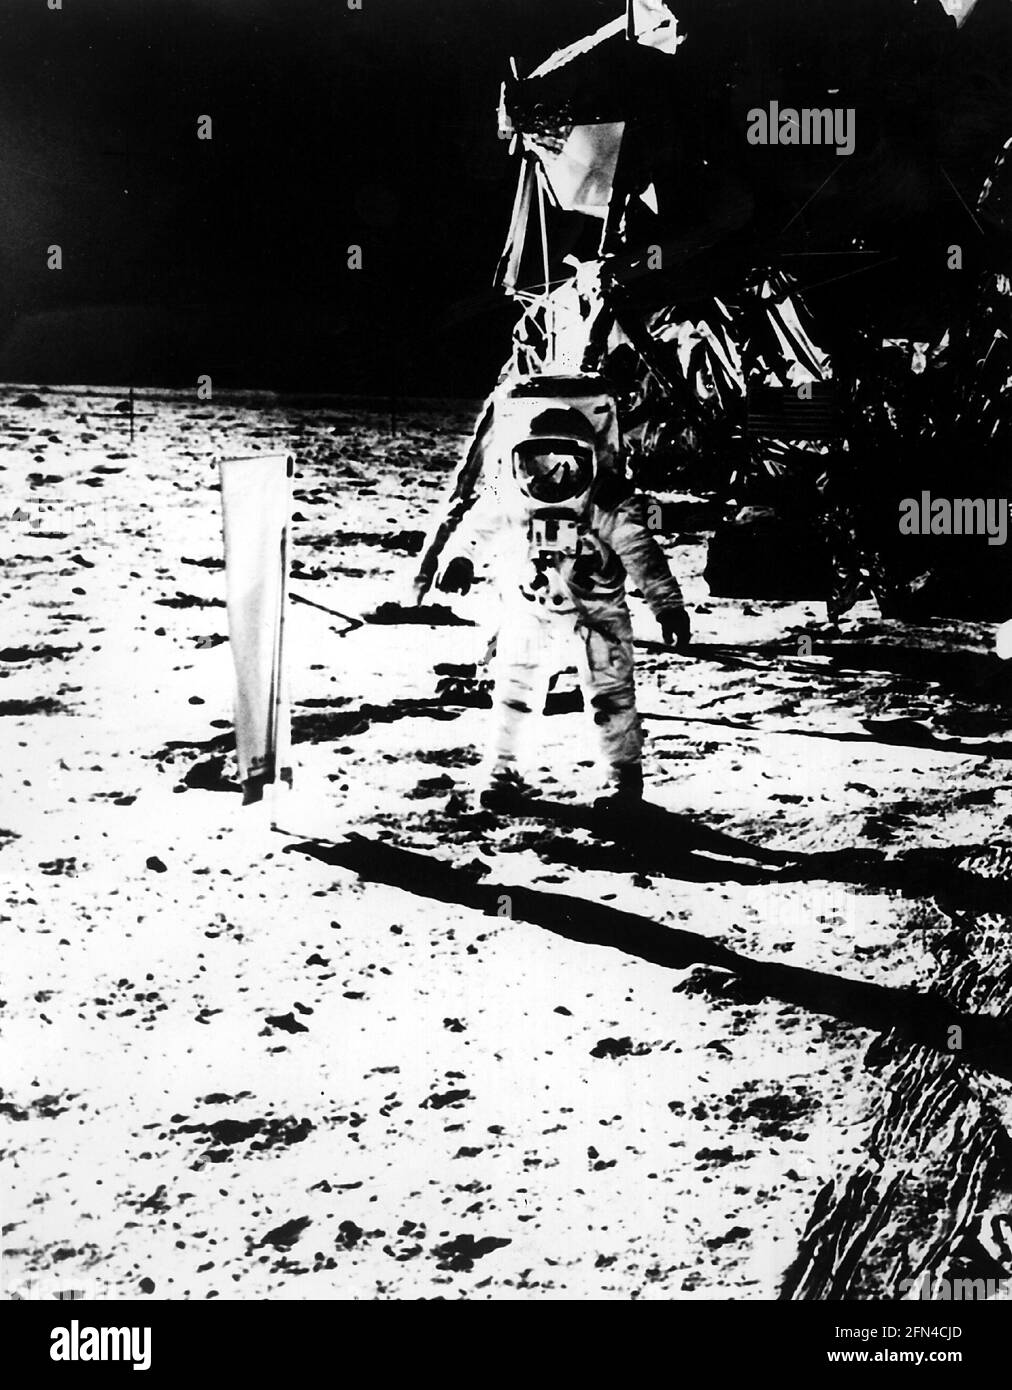 Astronautique, Apollo 11, atterrissage sur la lune, Edwin Aldrin sur la lune, juillet 1969, historique, historique, INFO-DROITS-SUPPLÉMENTAIRES-NON-DISPONIBLE Banque D'Images